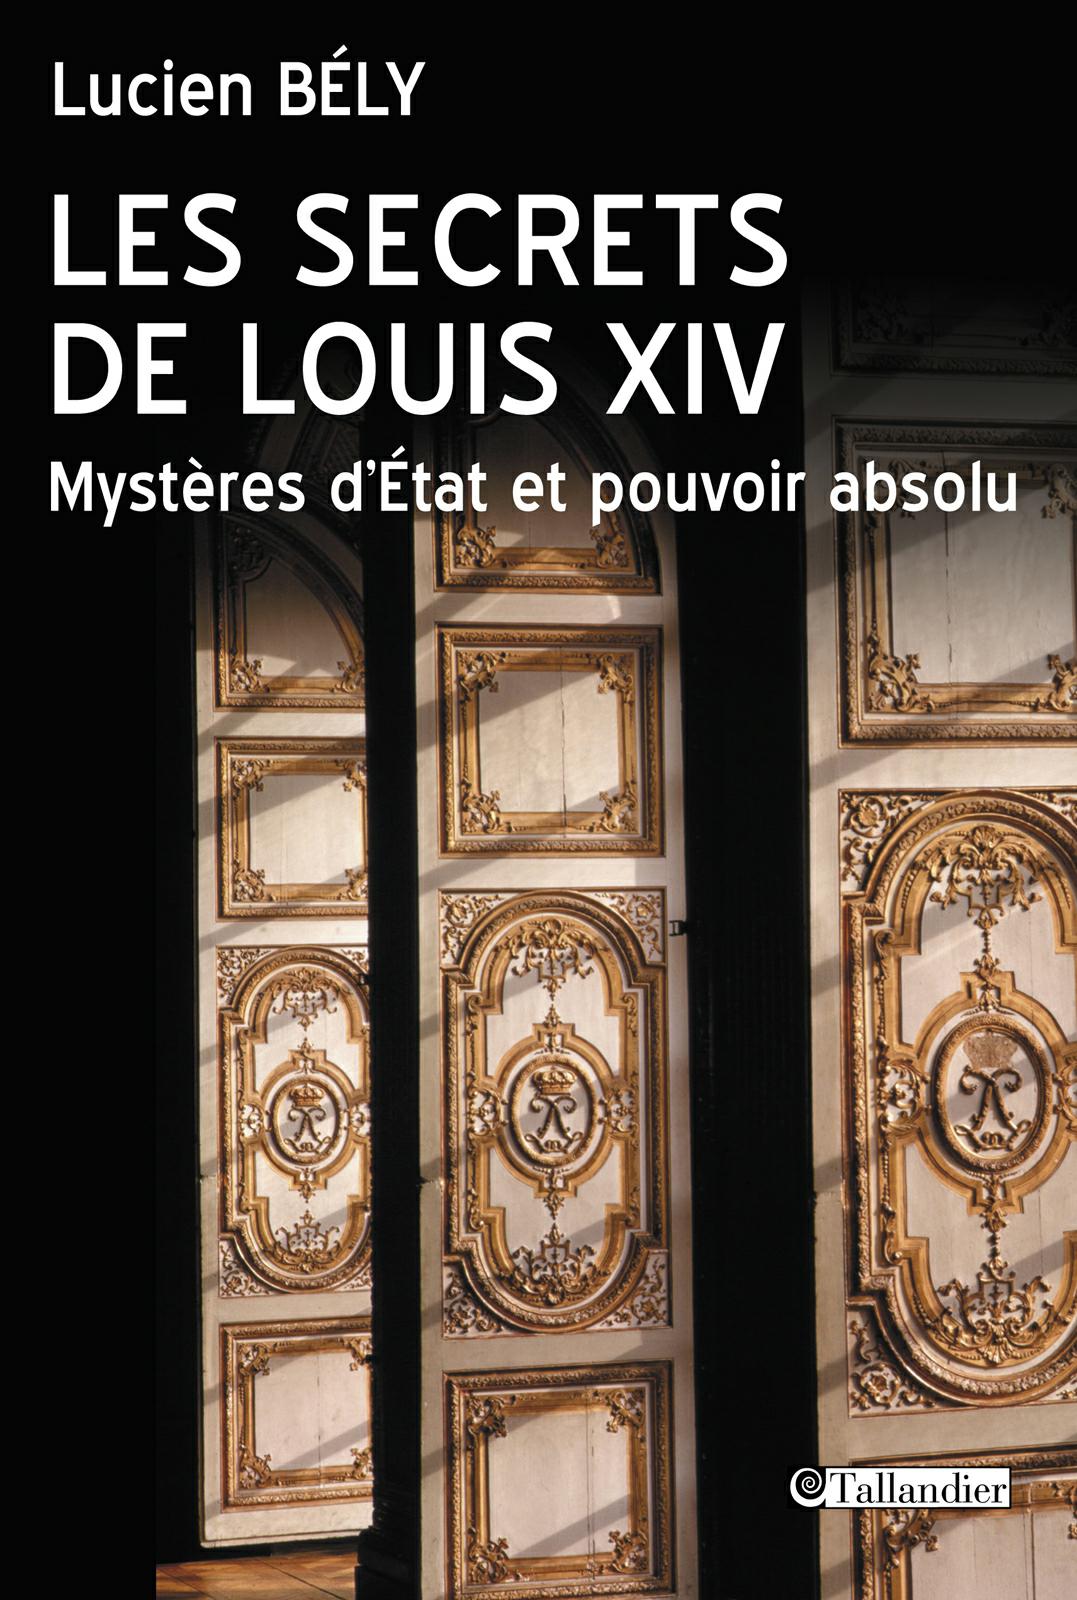 Les secrets de Louis XIV. Lucien Bély